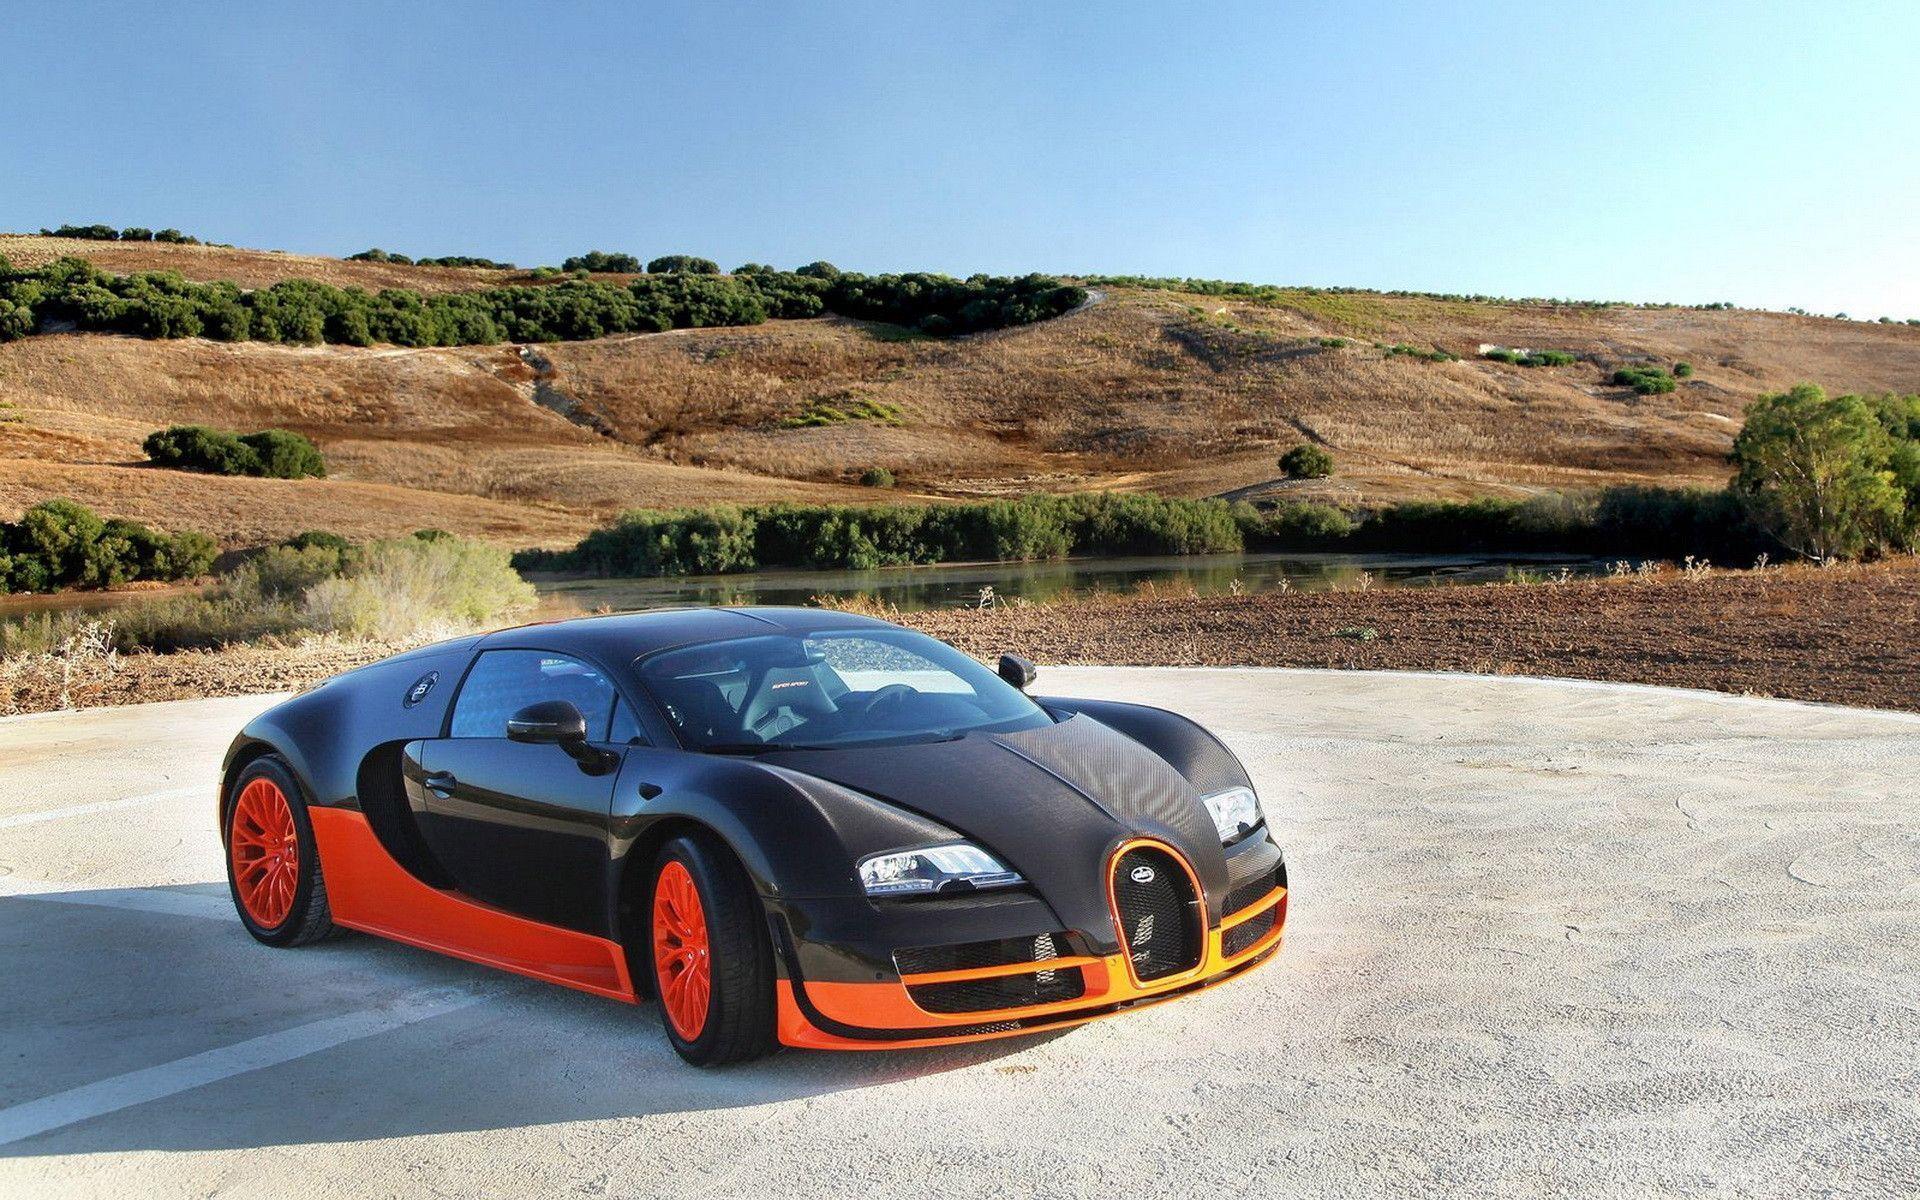 Bugatti Veyron Super Sport Wallpaper And Image